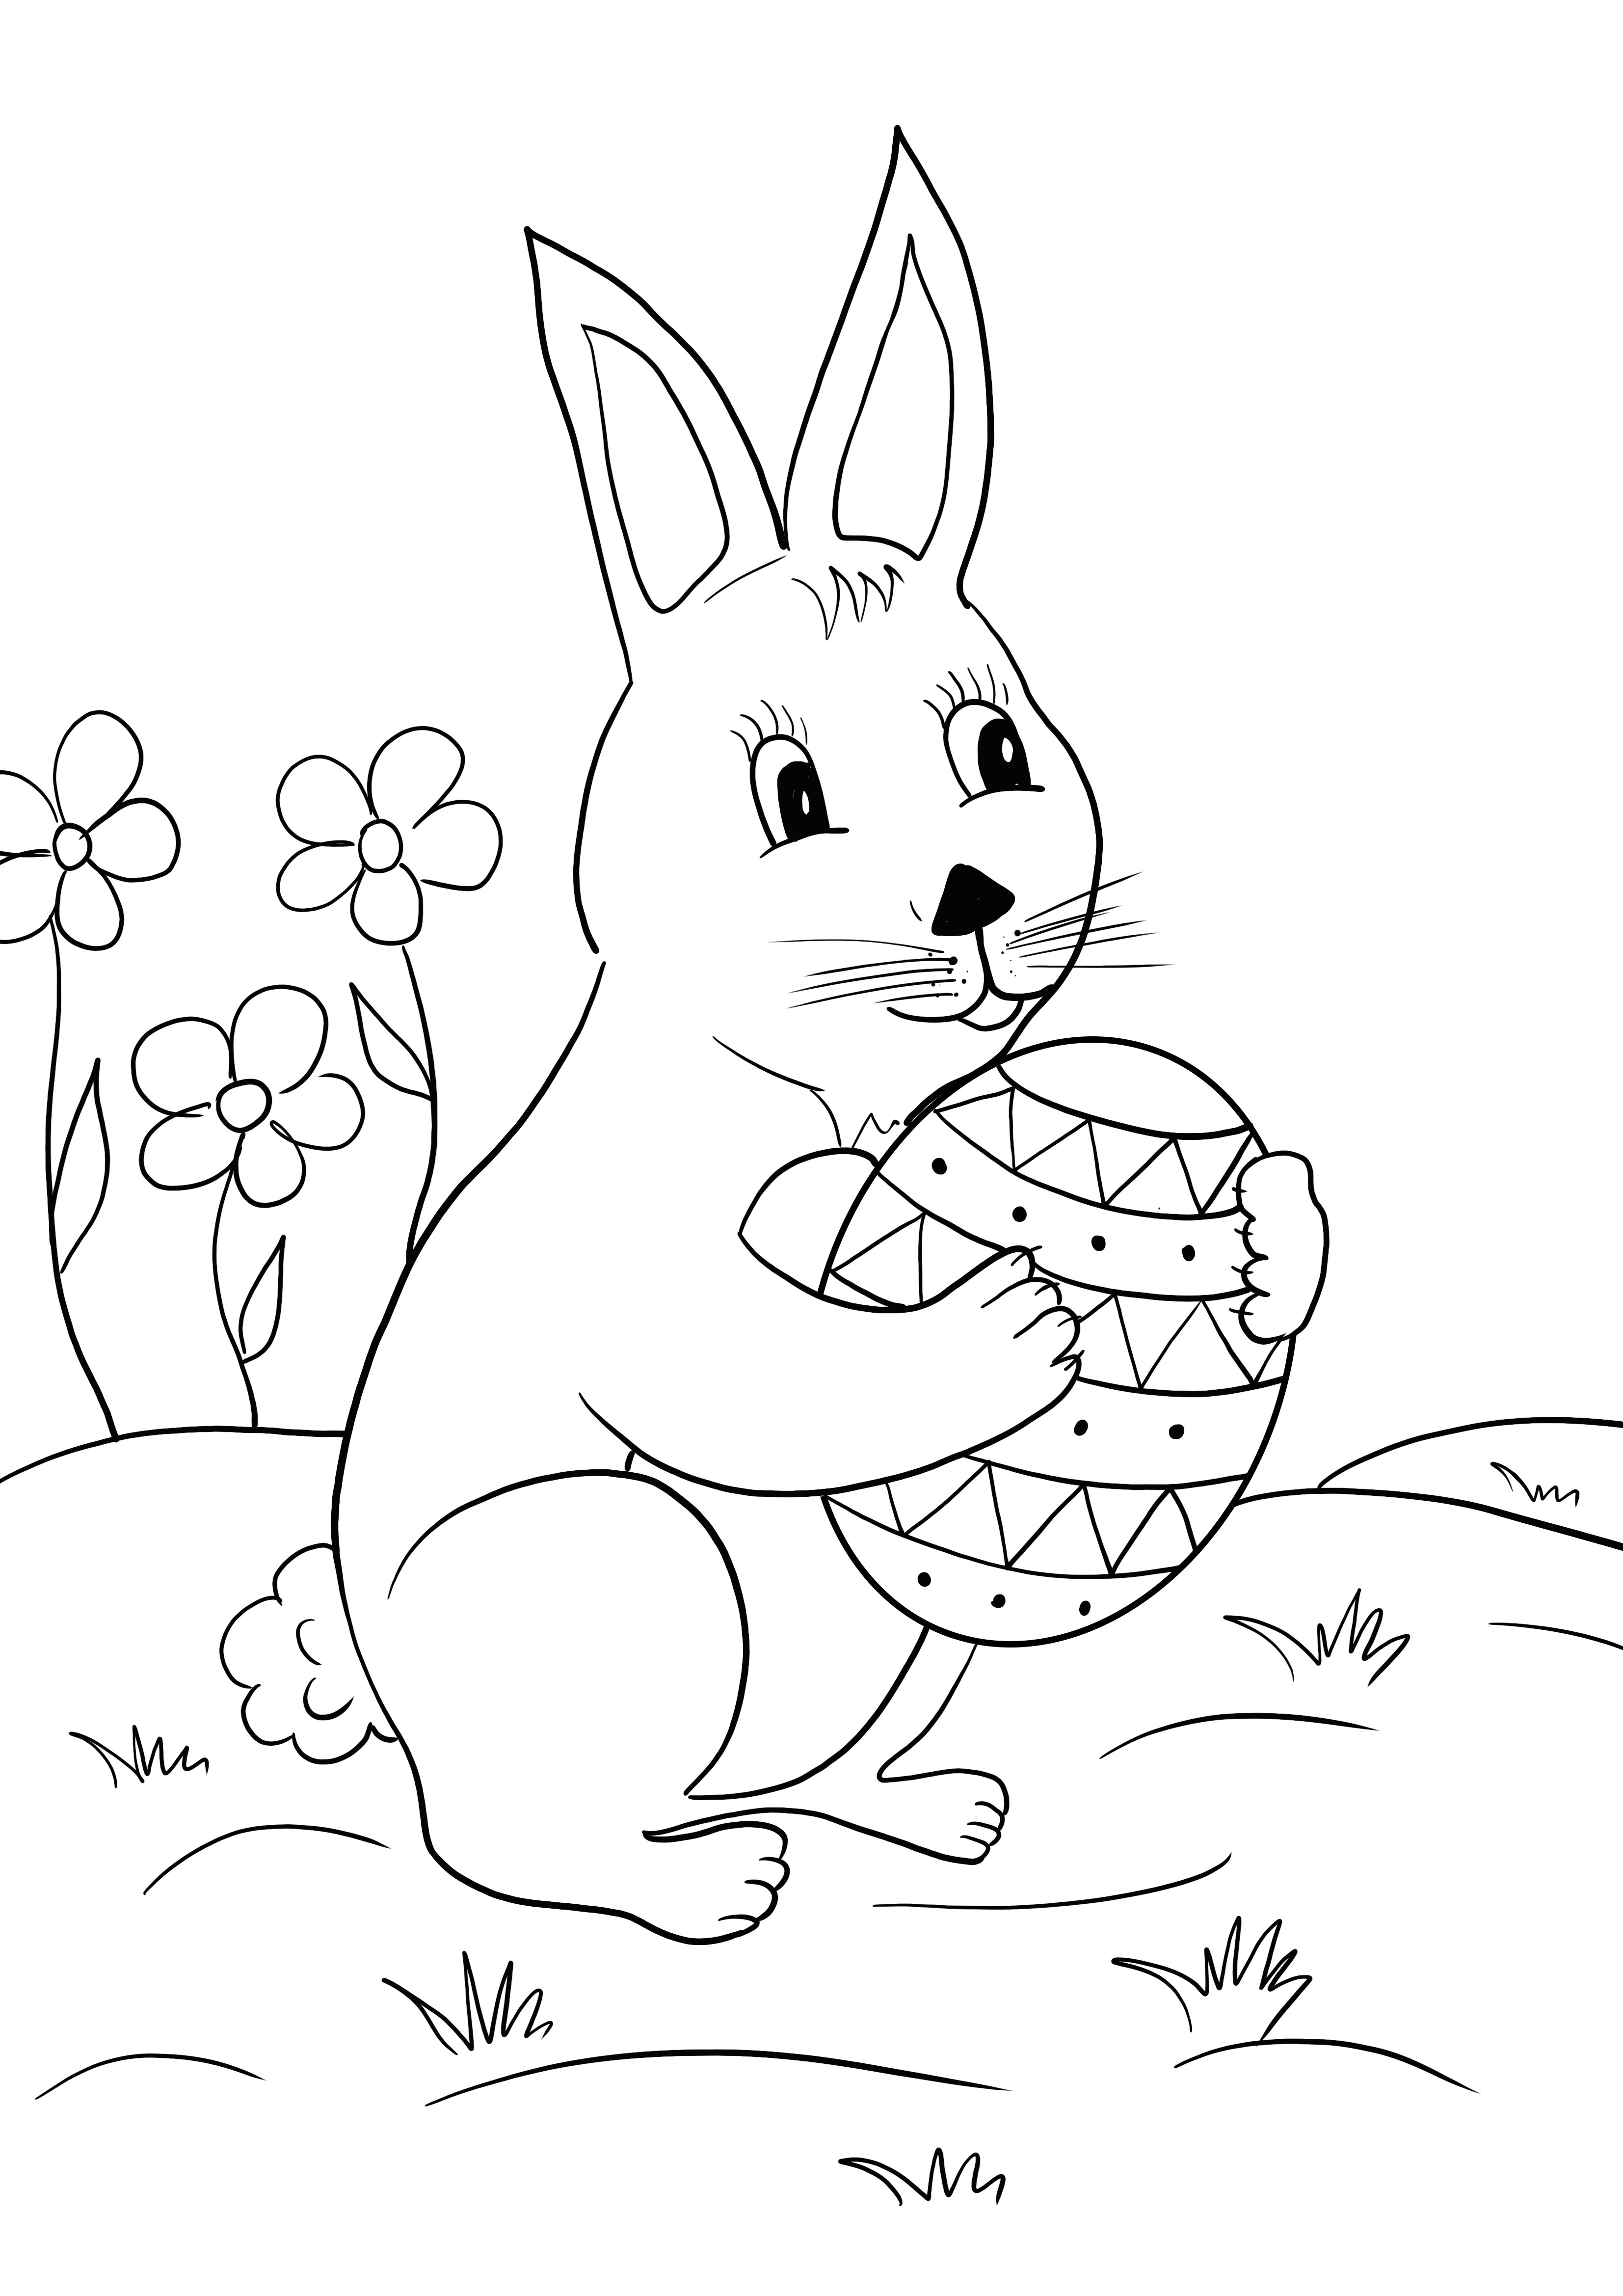 Ücretsiz ve renkli baskı için Paskalya tavşanı ve yumurta